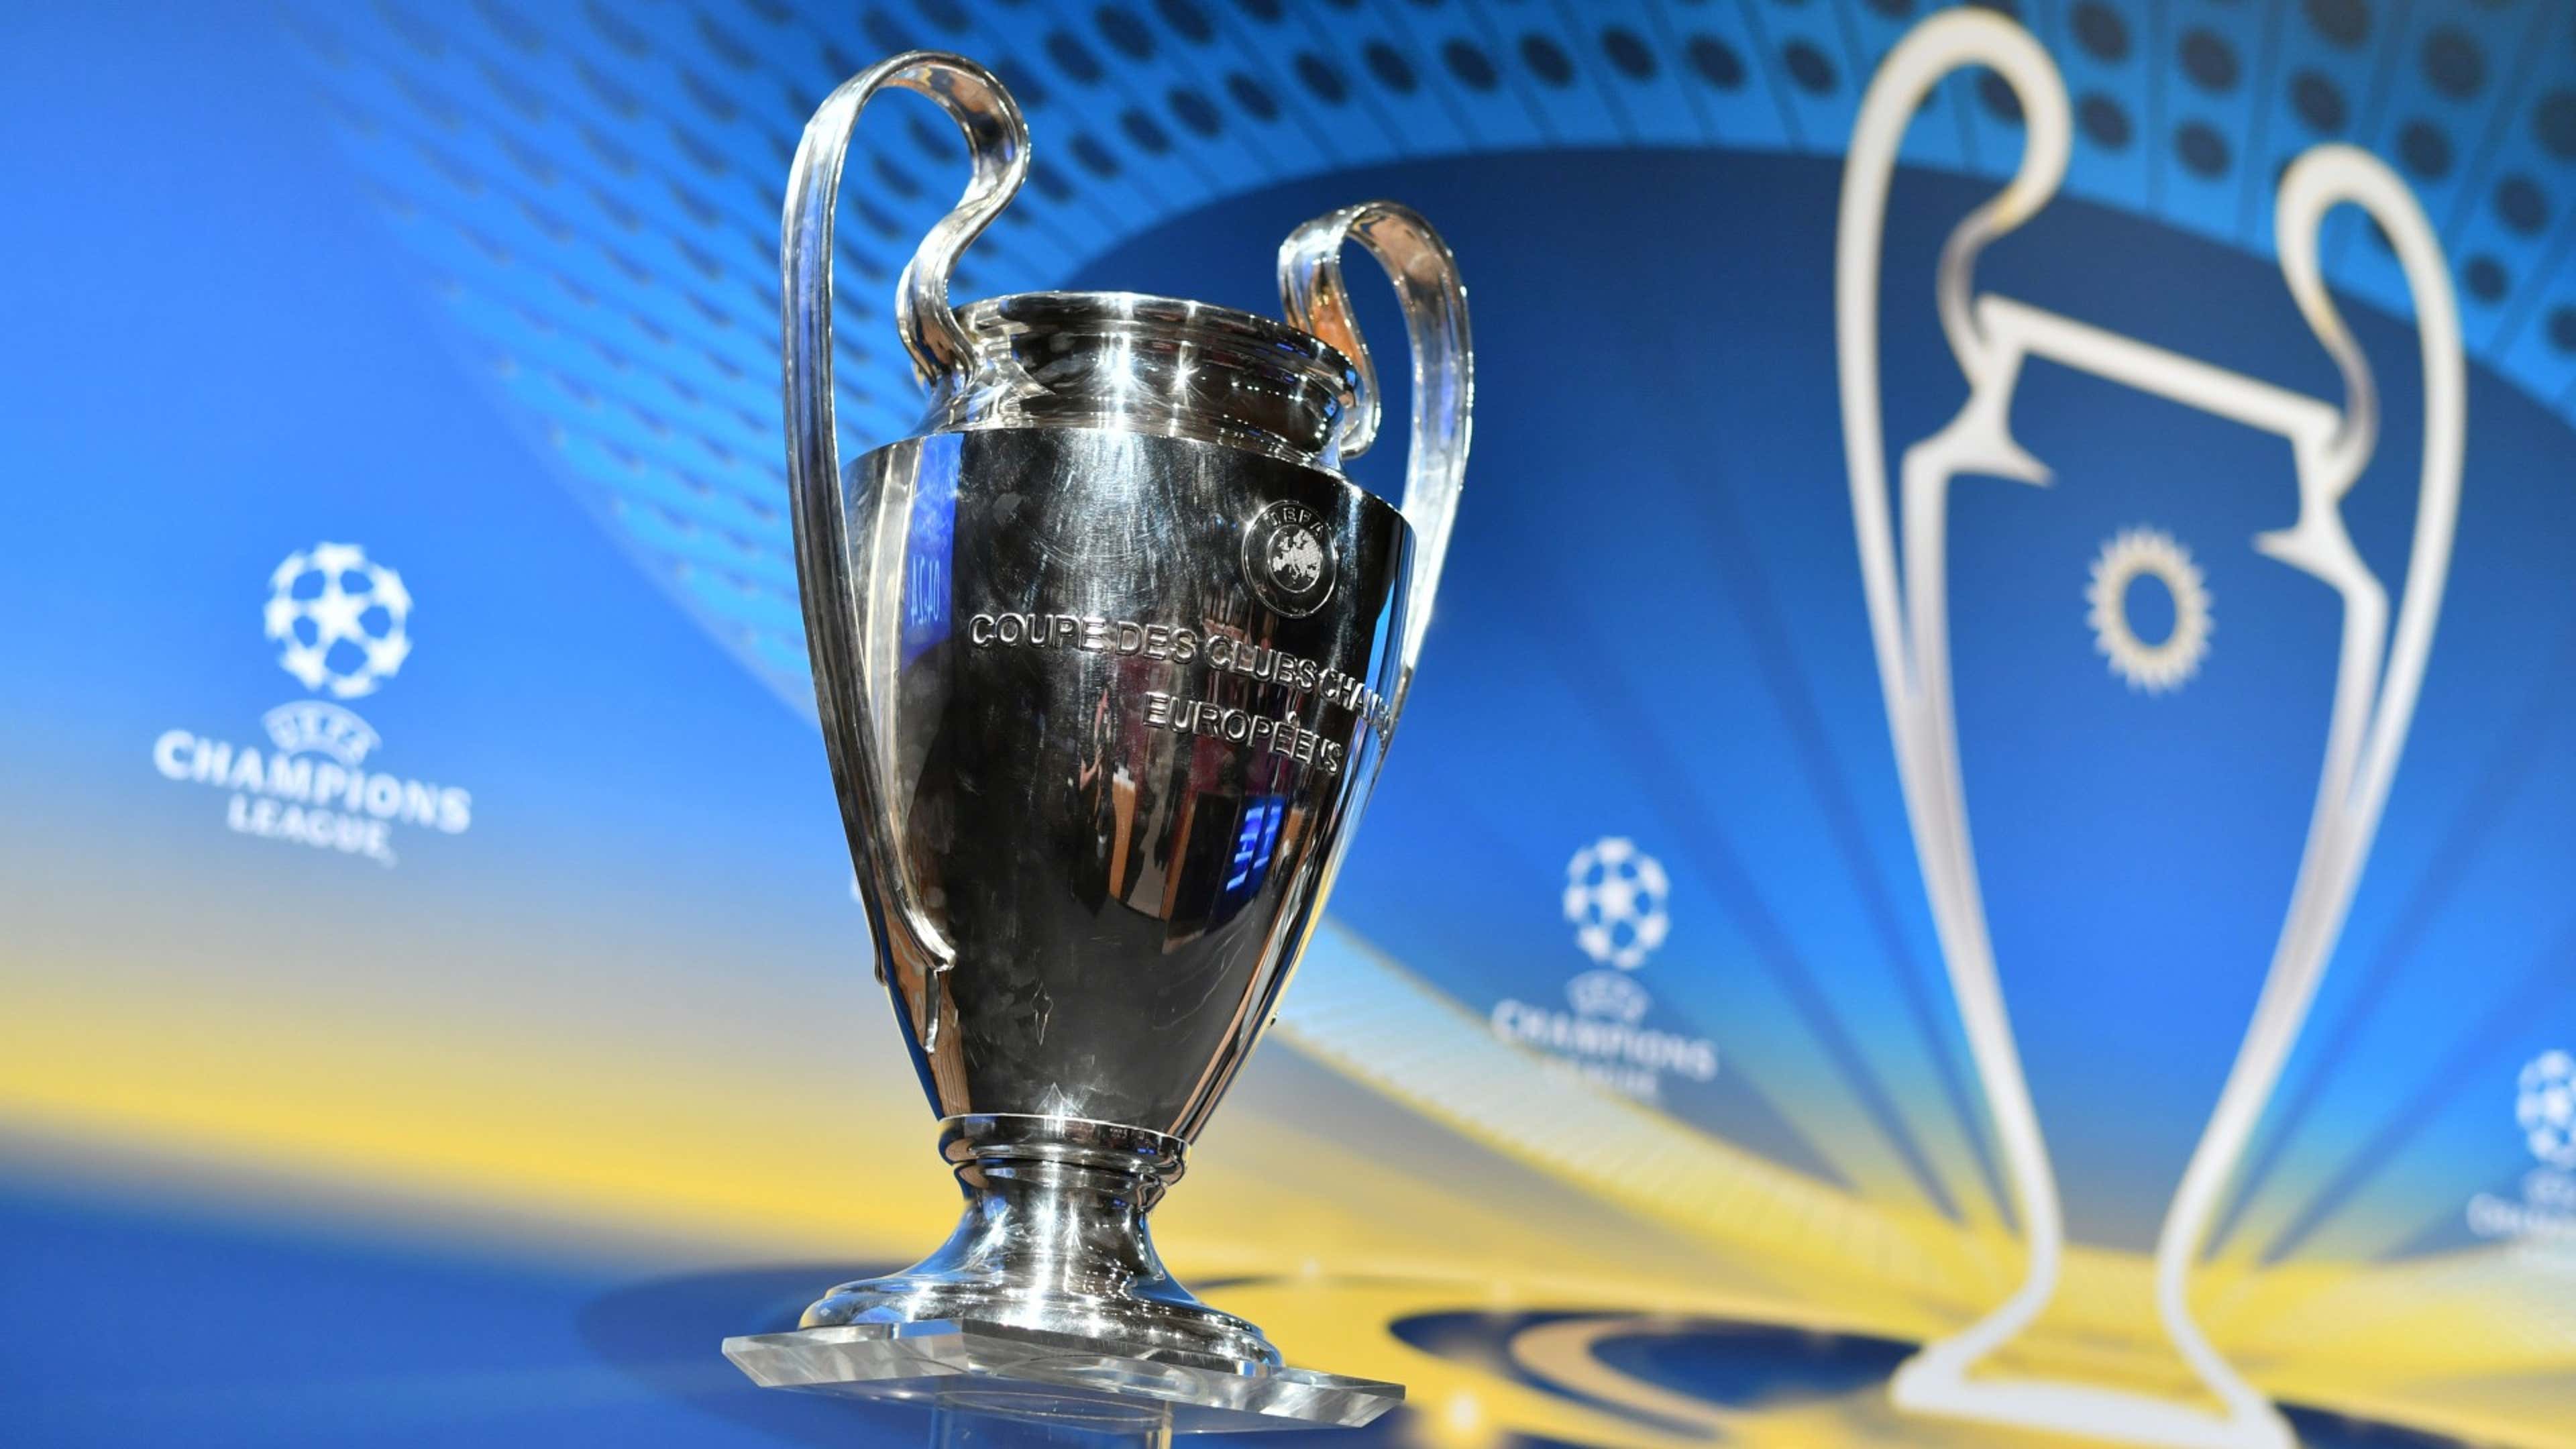 Champions League 2021/22: saiba onde ver os jogos da semana na TV